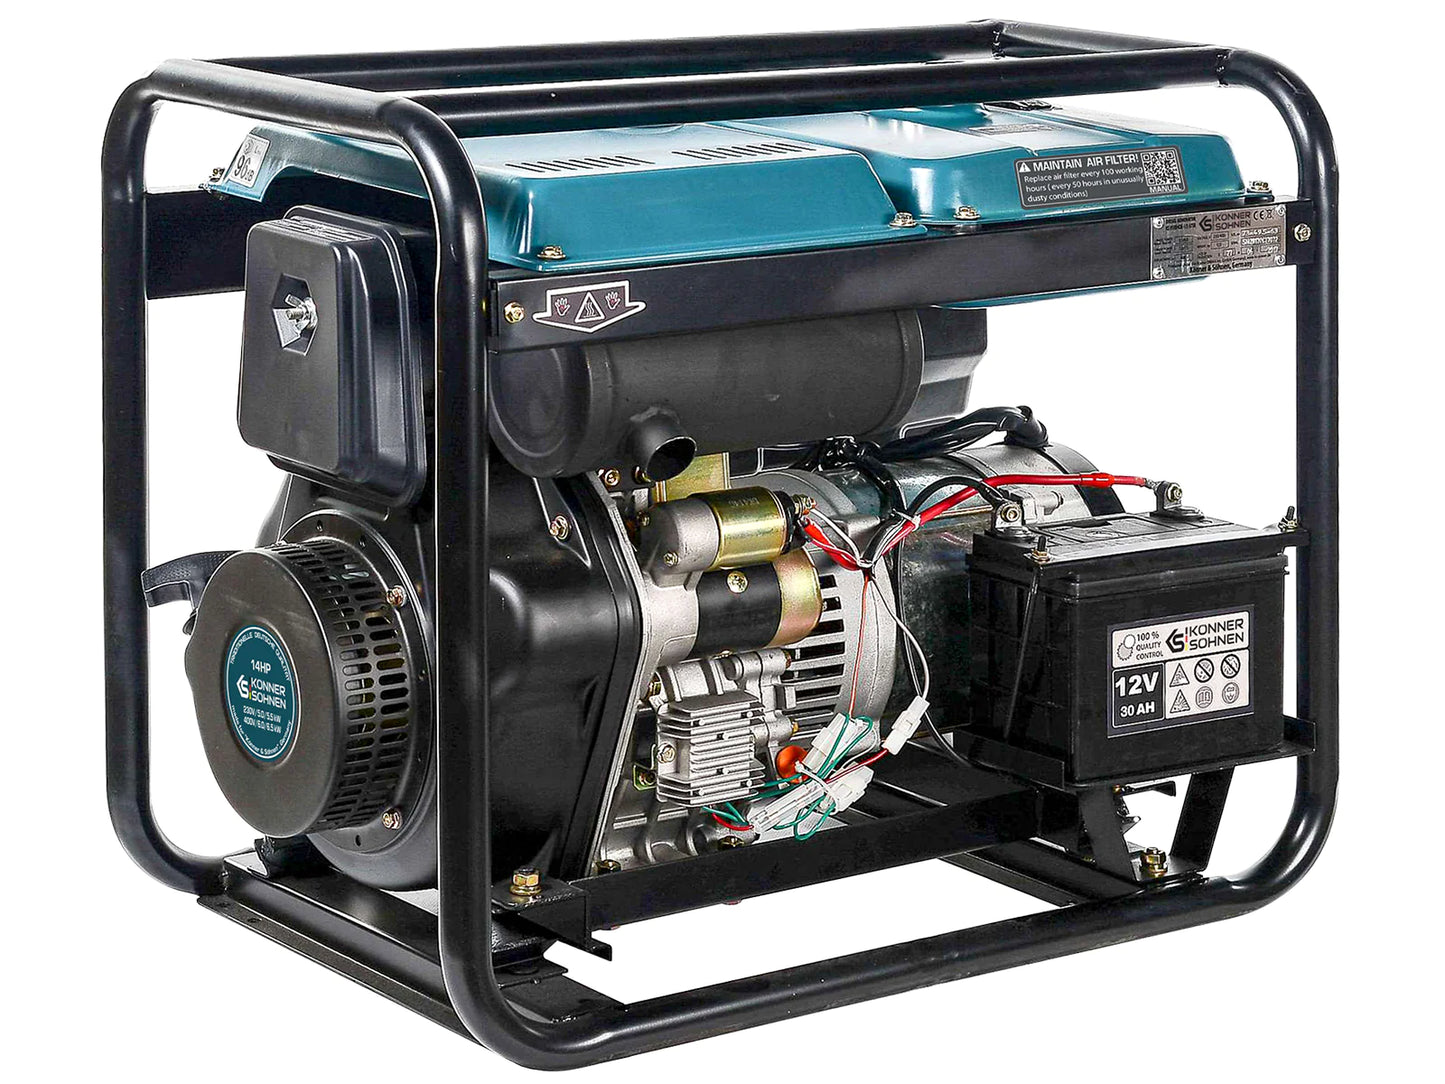 Diesel-Generator KS 8100HDE-1/3 ATSR